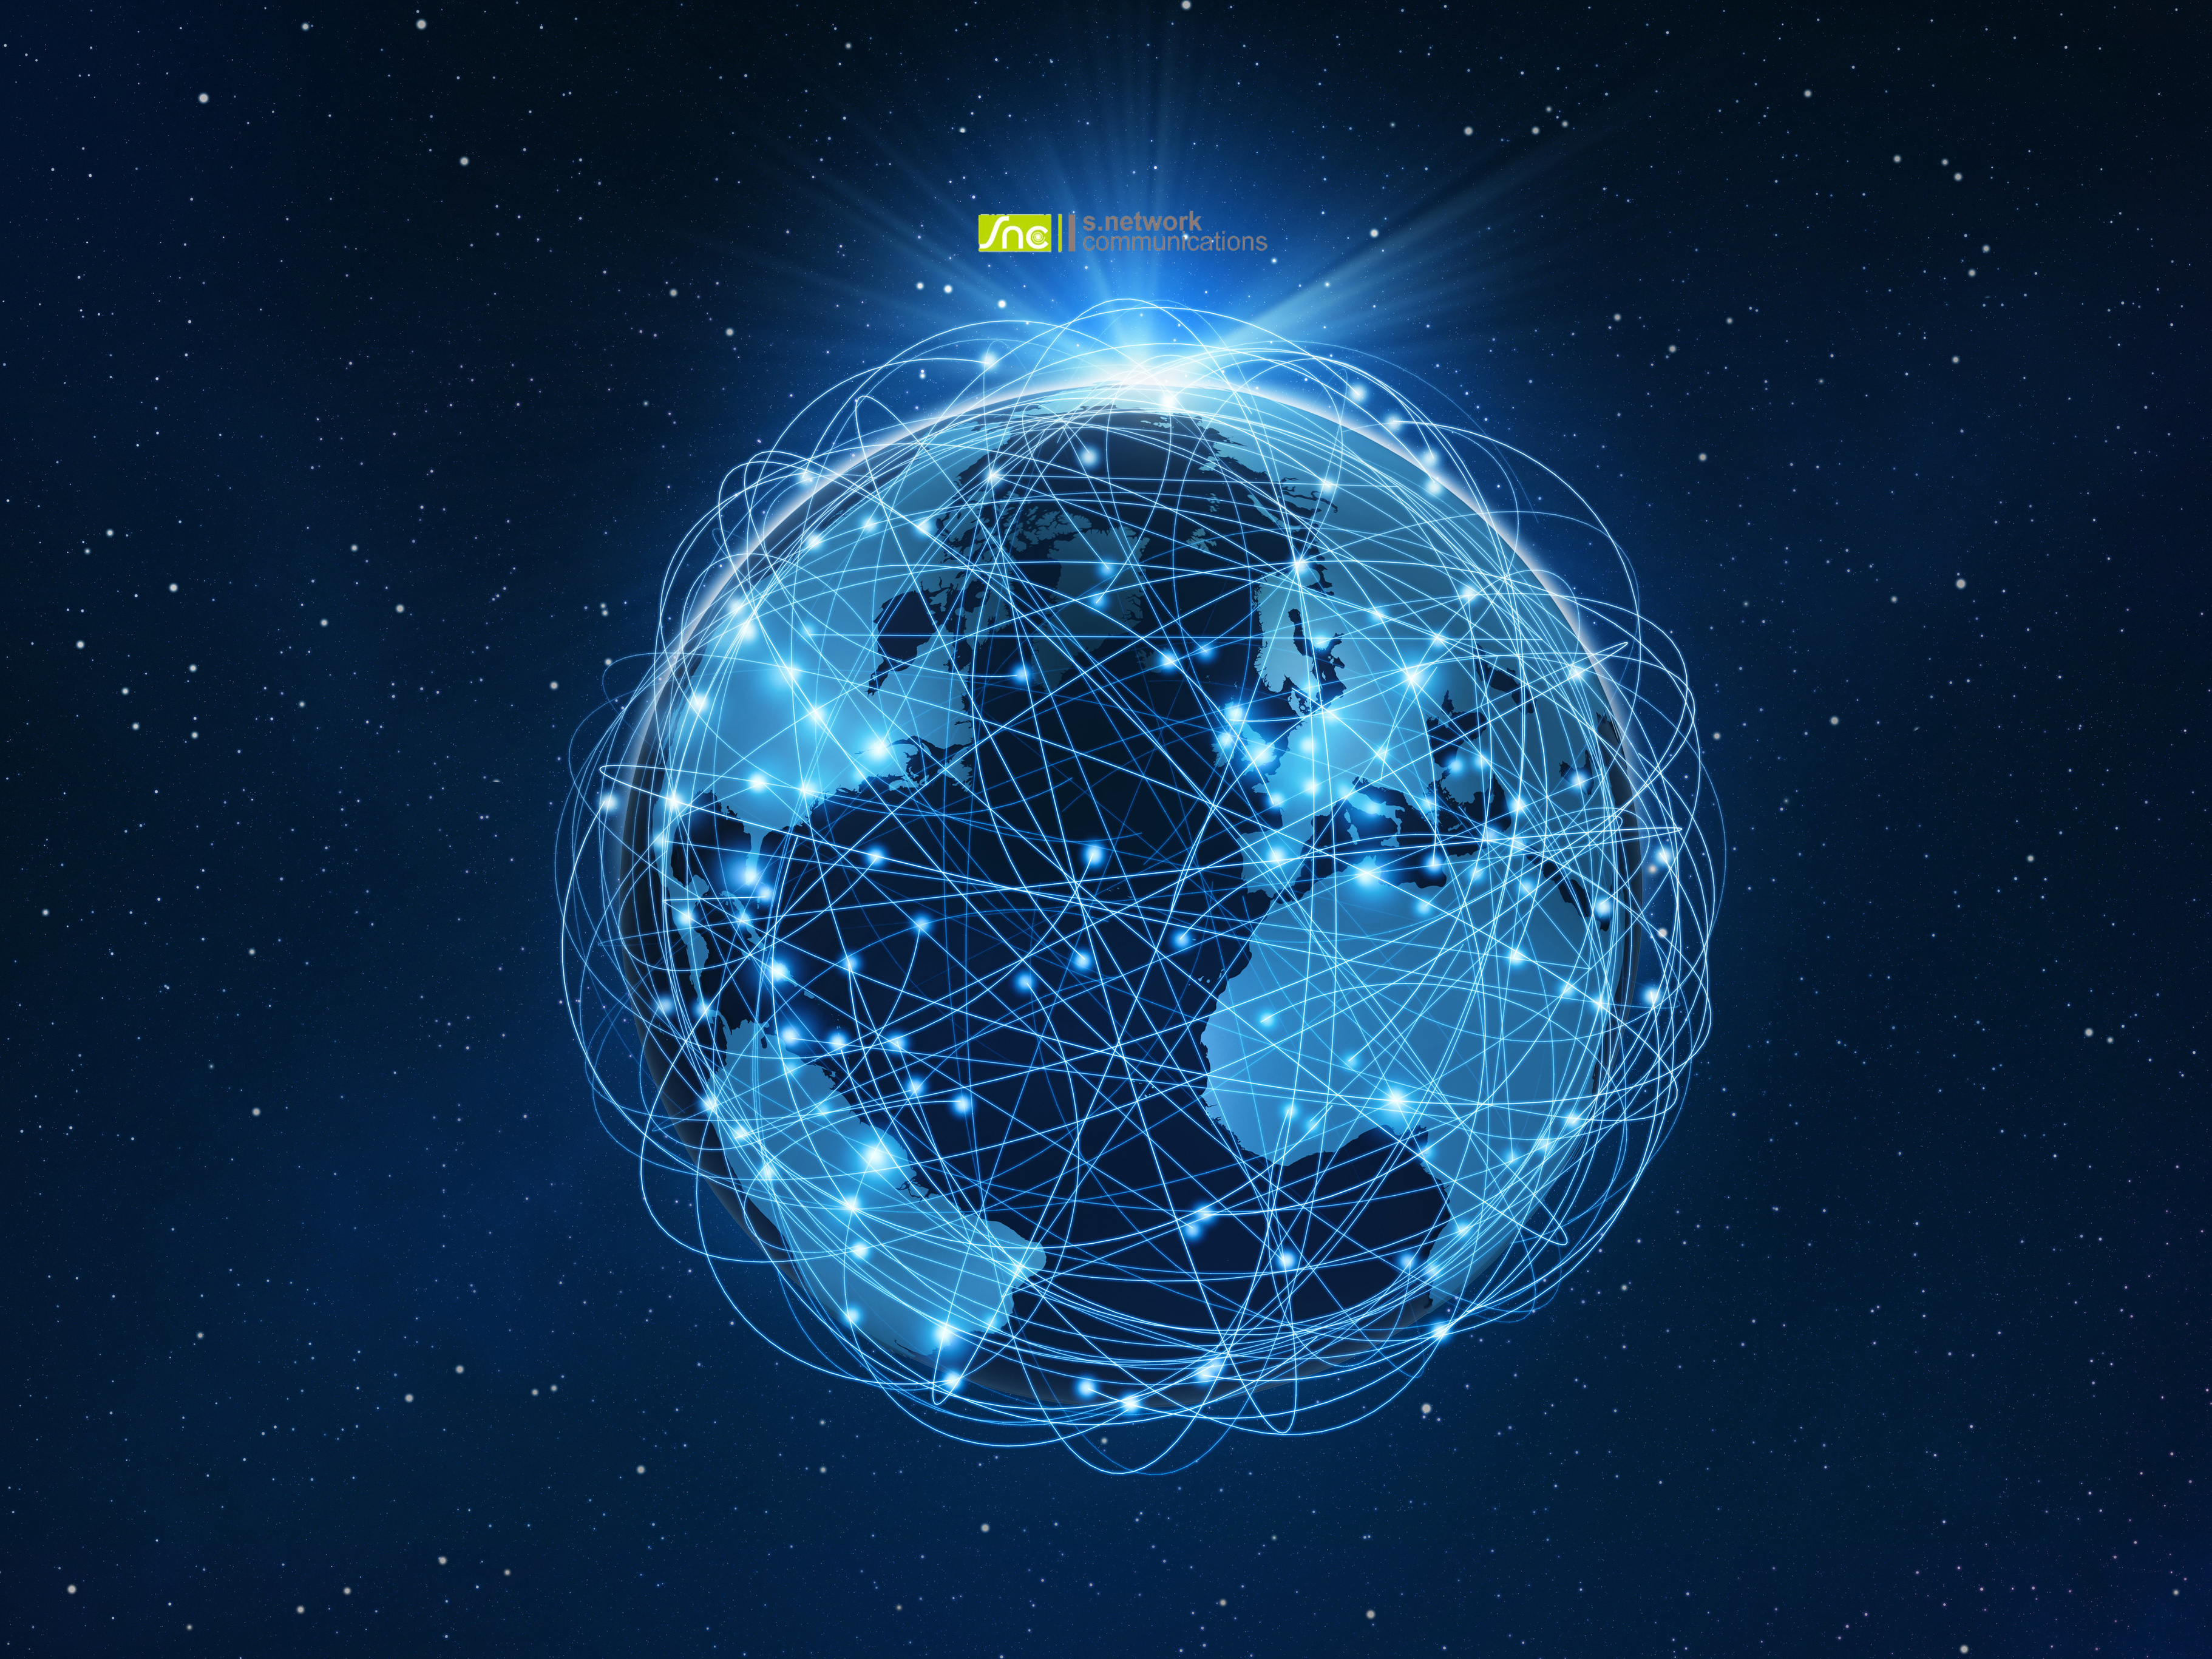  «С.Сетевая связь»: Ваш надежный проводник в мир цифровых технологий и Интернета